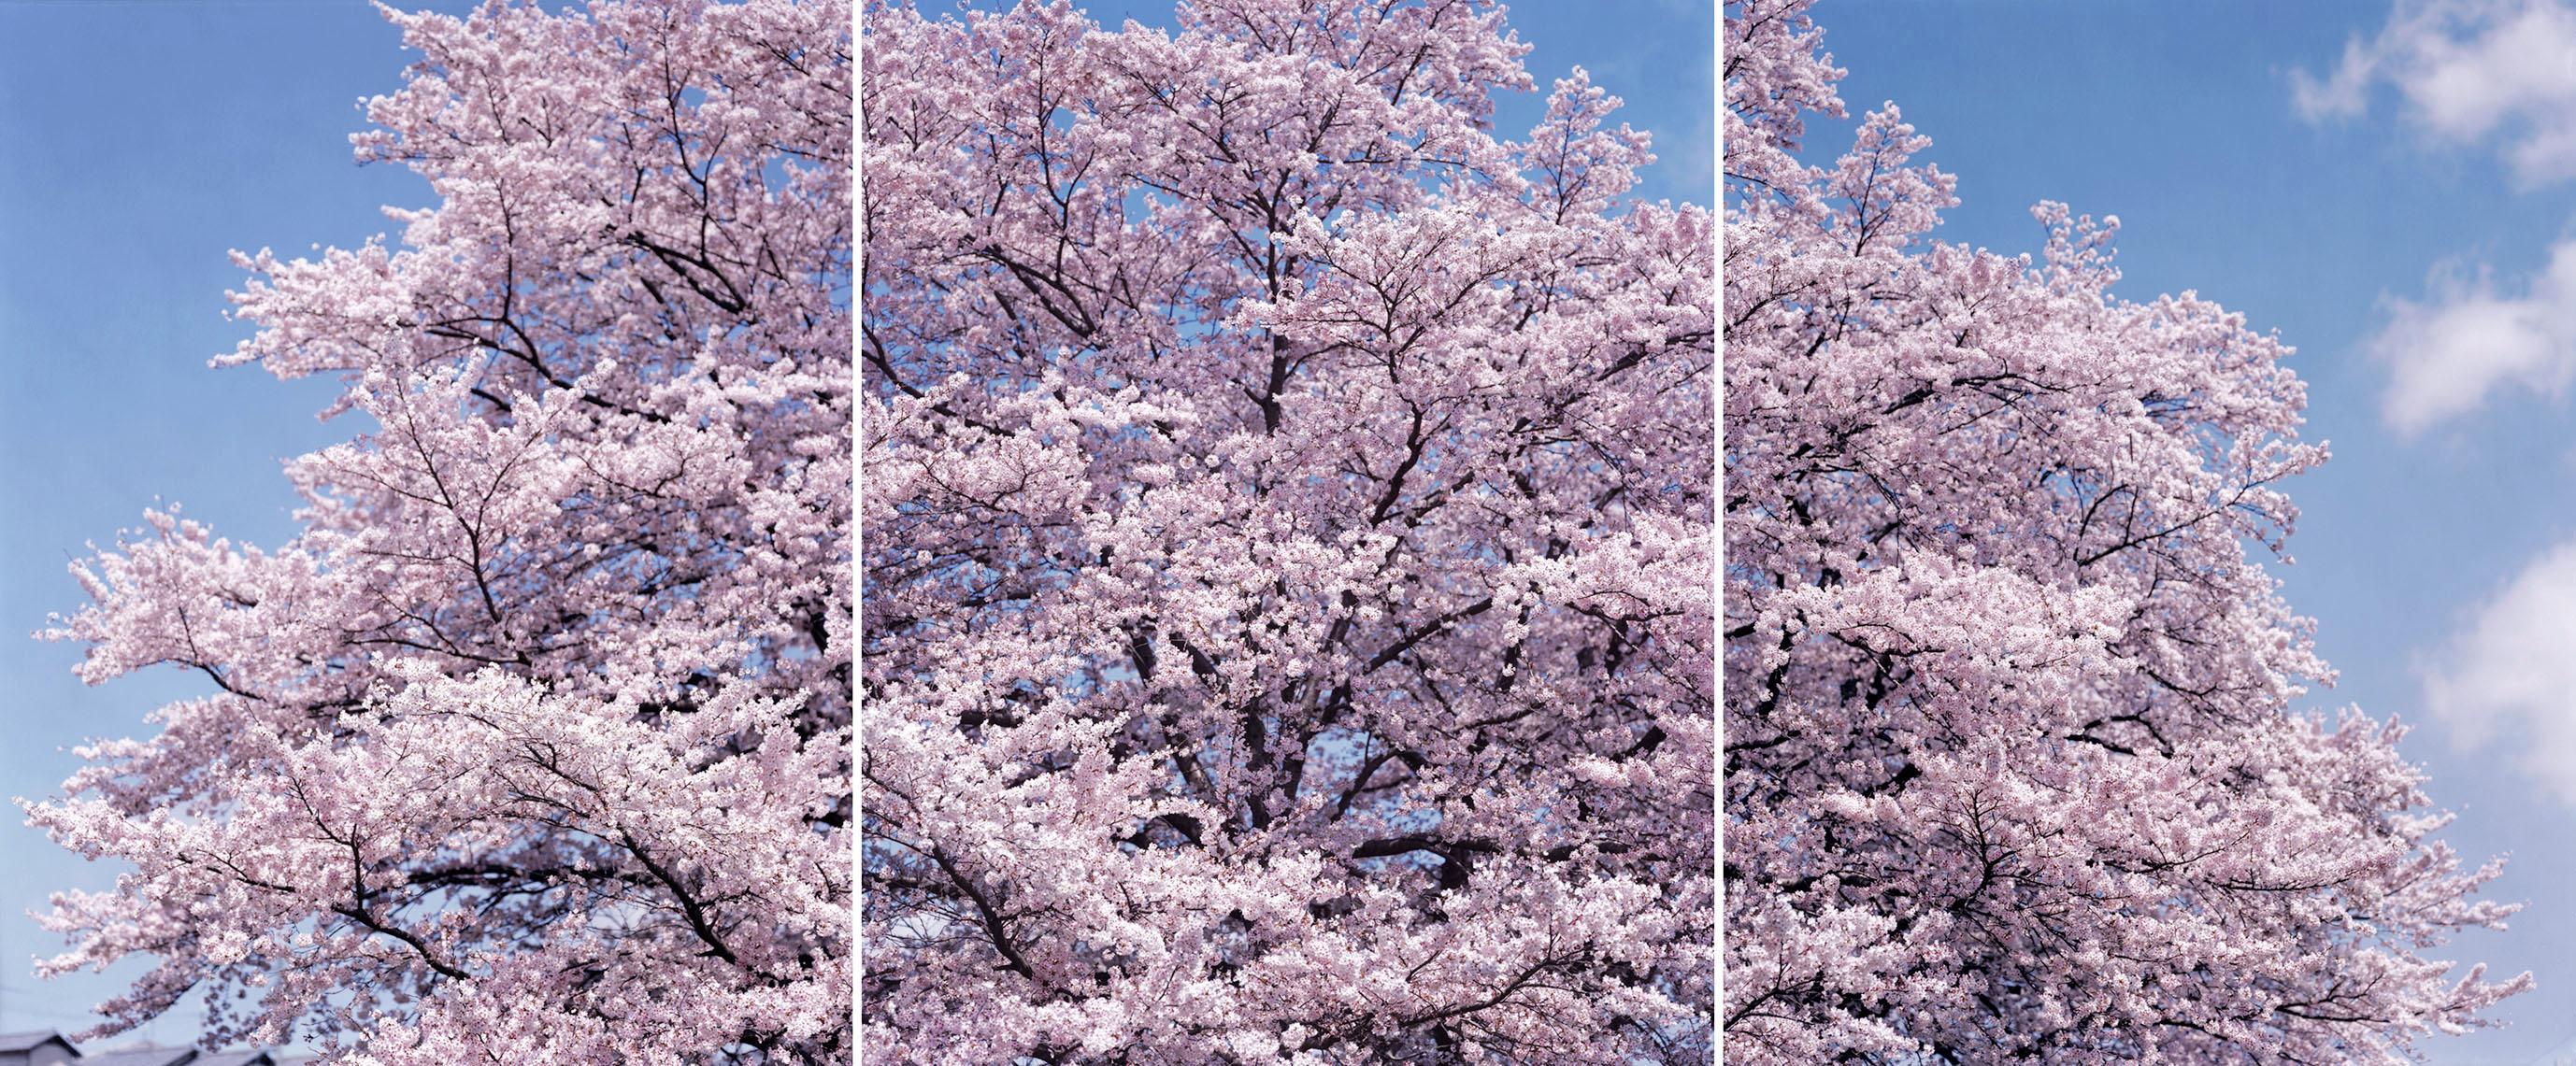 SAKURA 19, 4-357, 358, 359, 2019 – Risaku Suzuki, Cherry blossom, Spring, Japan 2